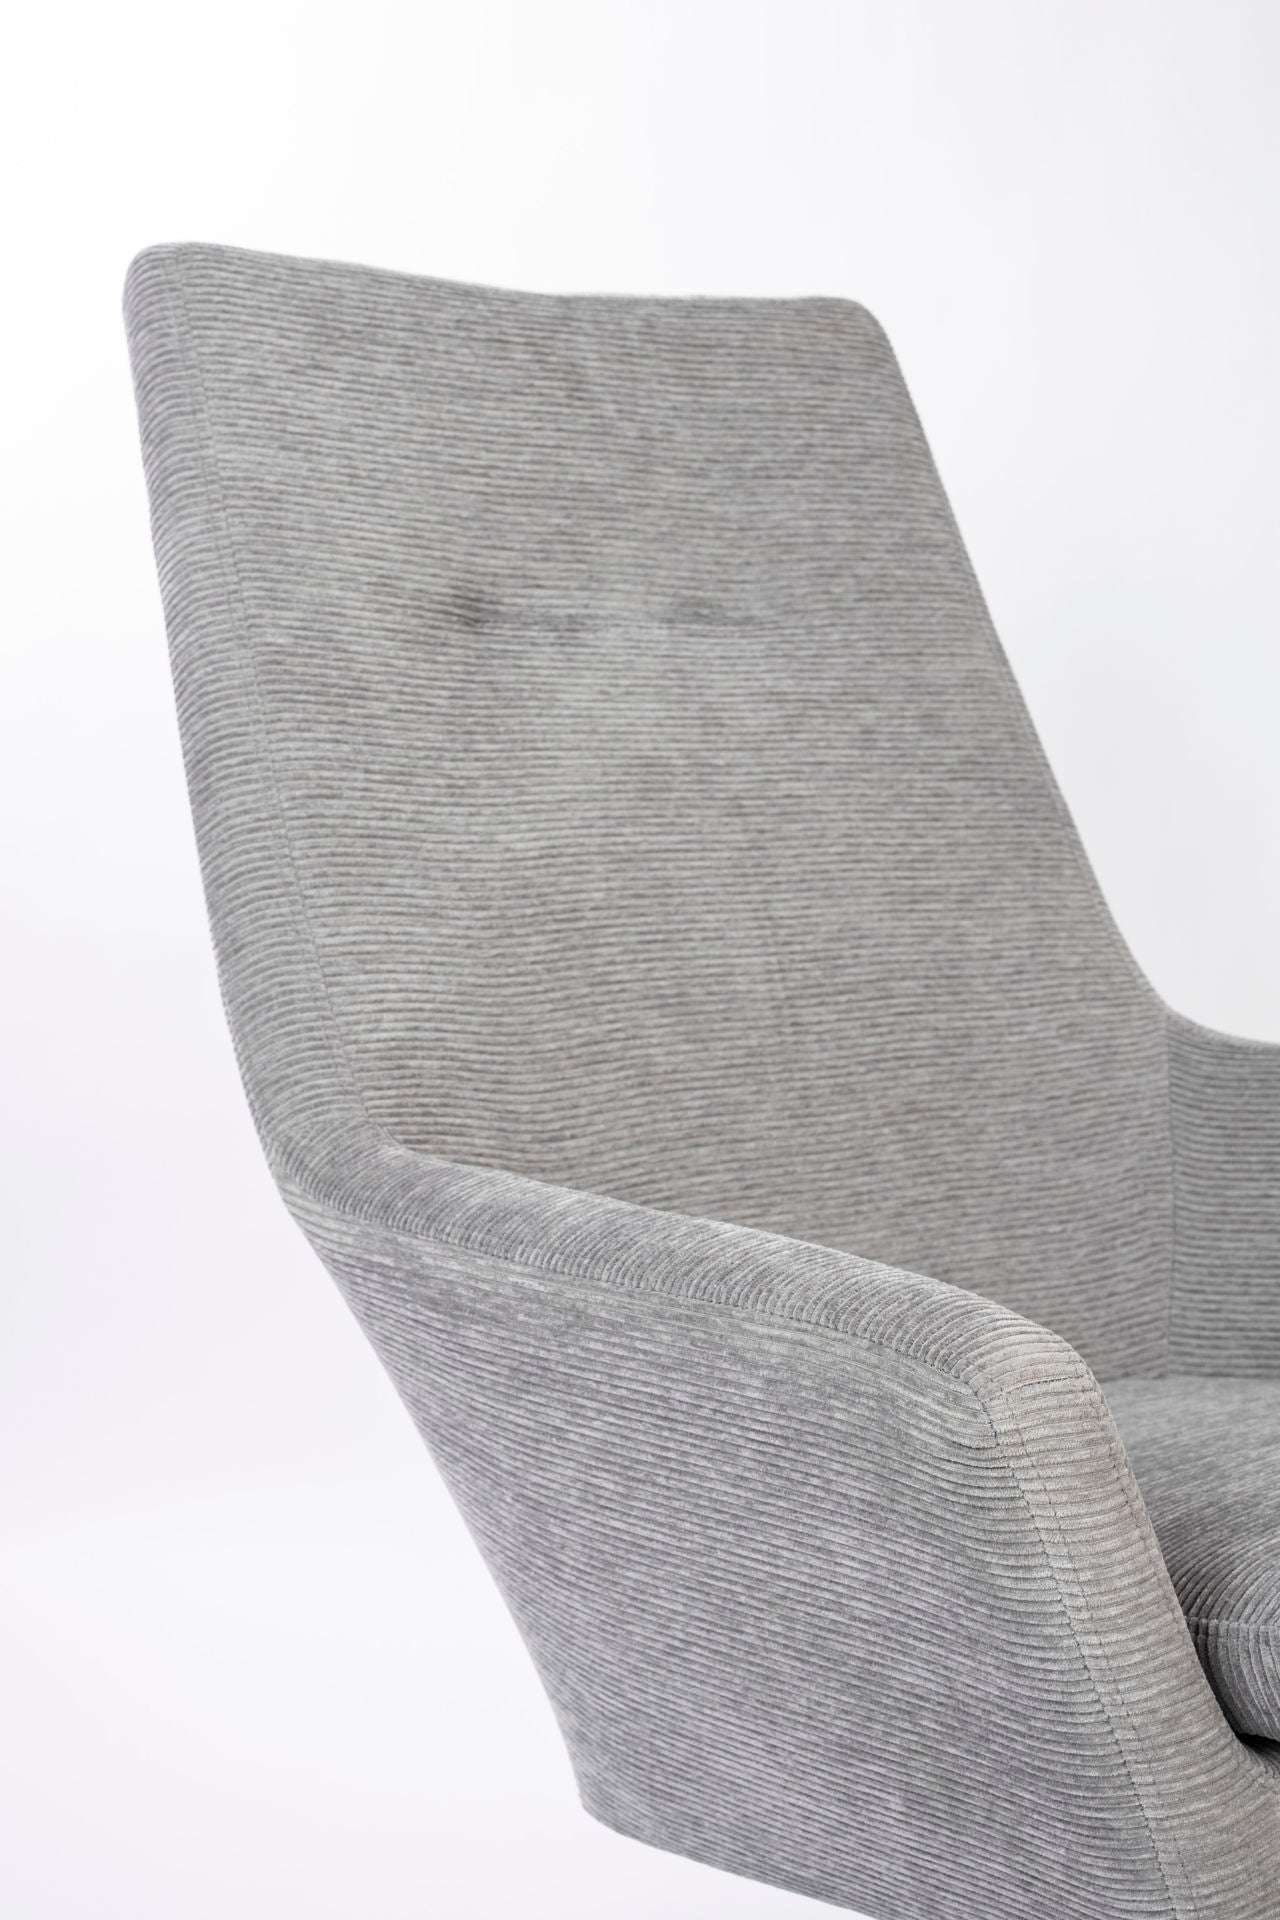 Nancy's Beachwood Lounge Chair - Industriel - Gris clair - Polyester, Contreplaqué, Fer - 79 cm x 76 cm x 98 cm